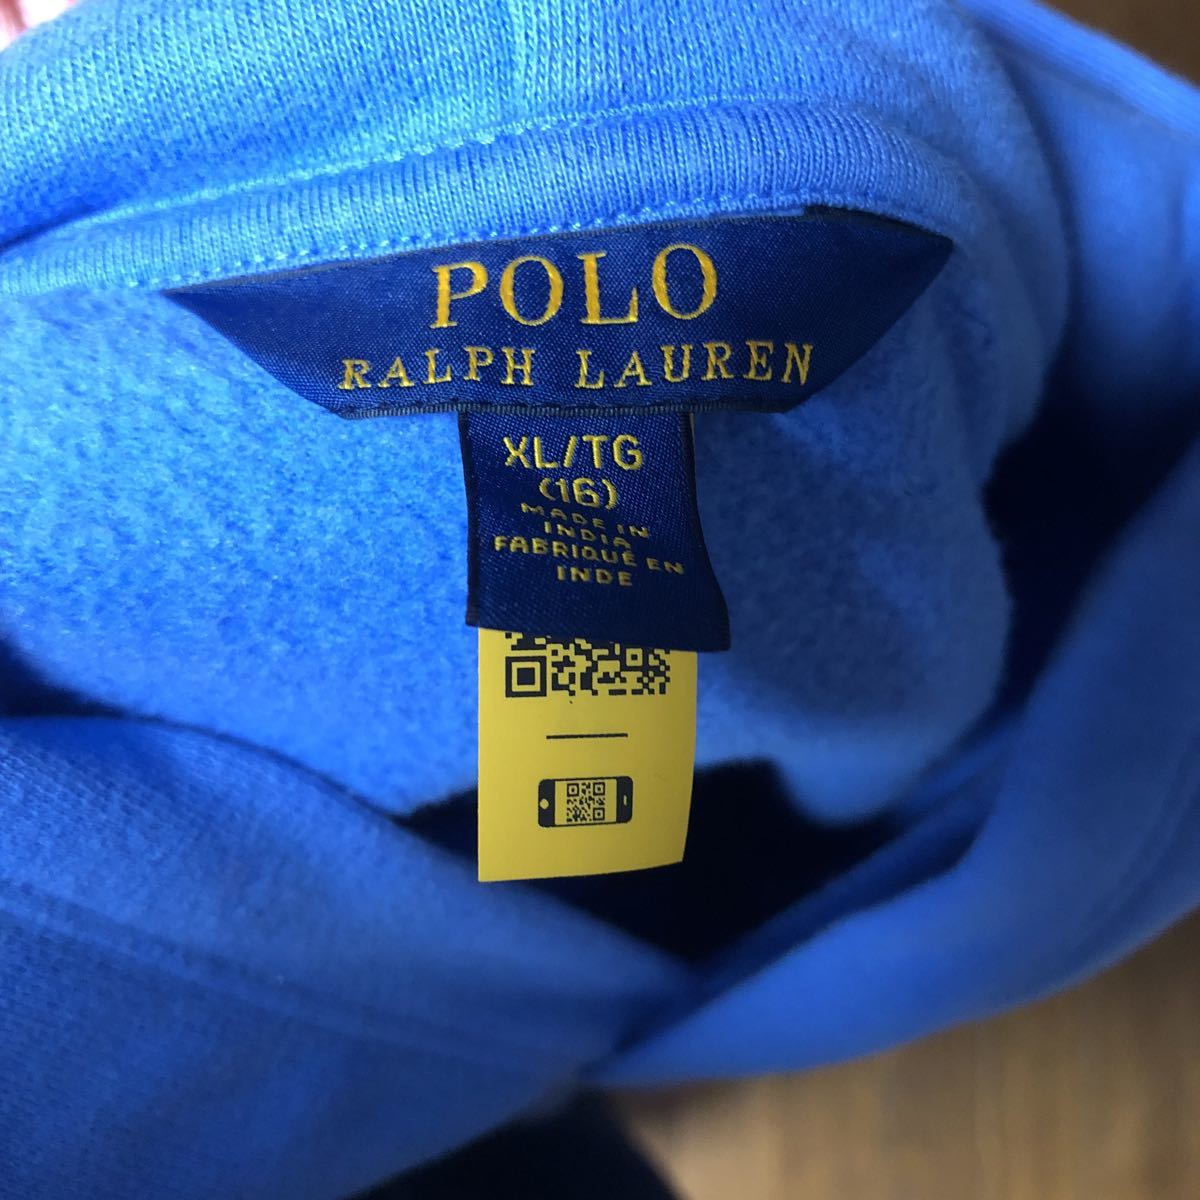  прекрасный товар Polo Ralph Lauren тренировочный Parker унисекс la gran рукав обратная сторона ворсистый голубой серый XL160 большой po колено 